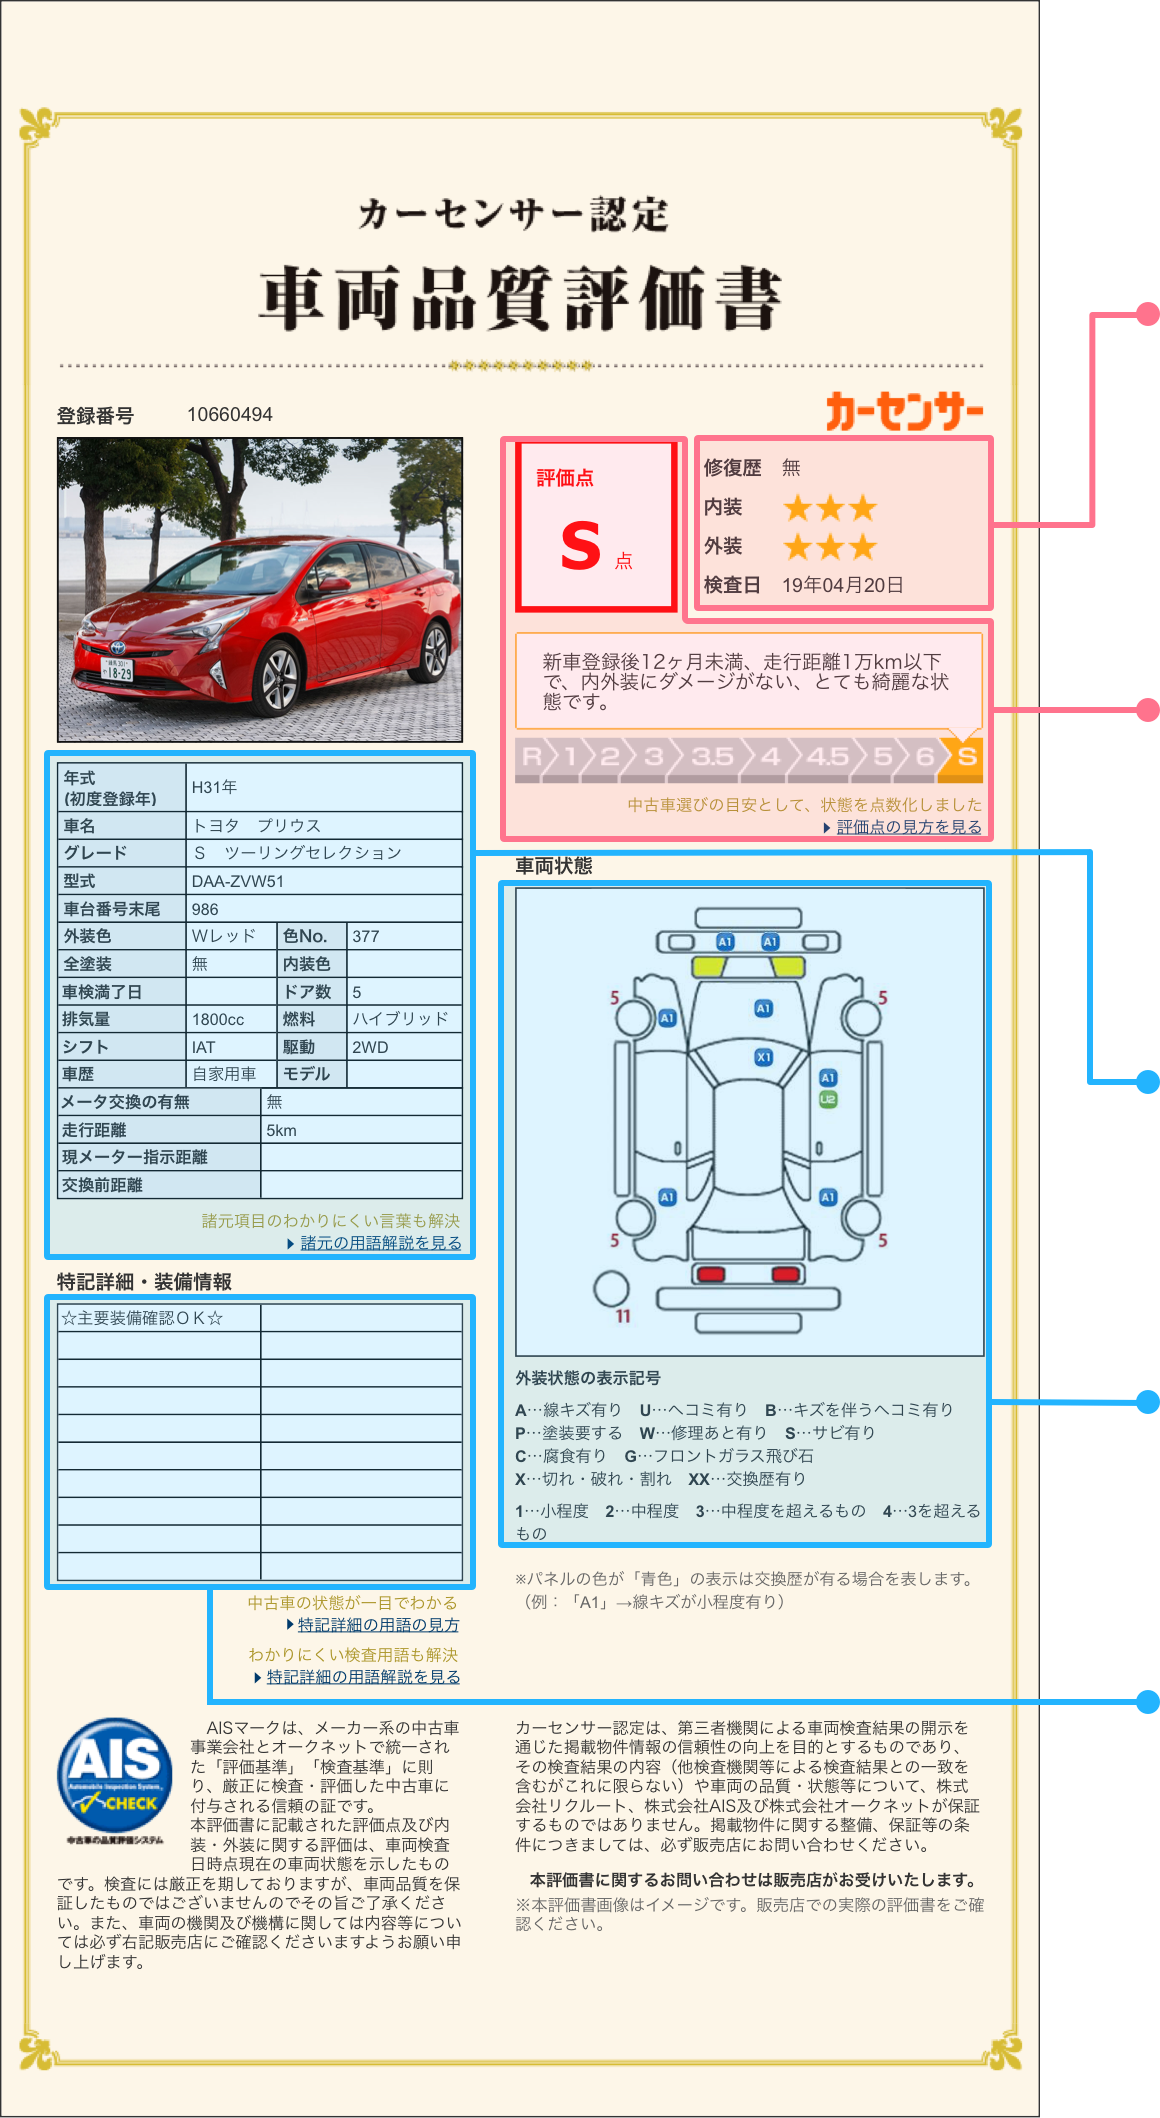 品質評価で安心の車選びカーセンサー認定コンテンツtop